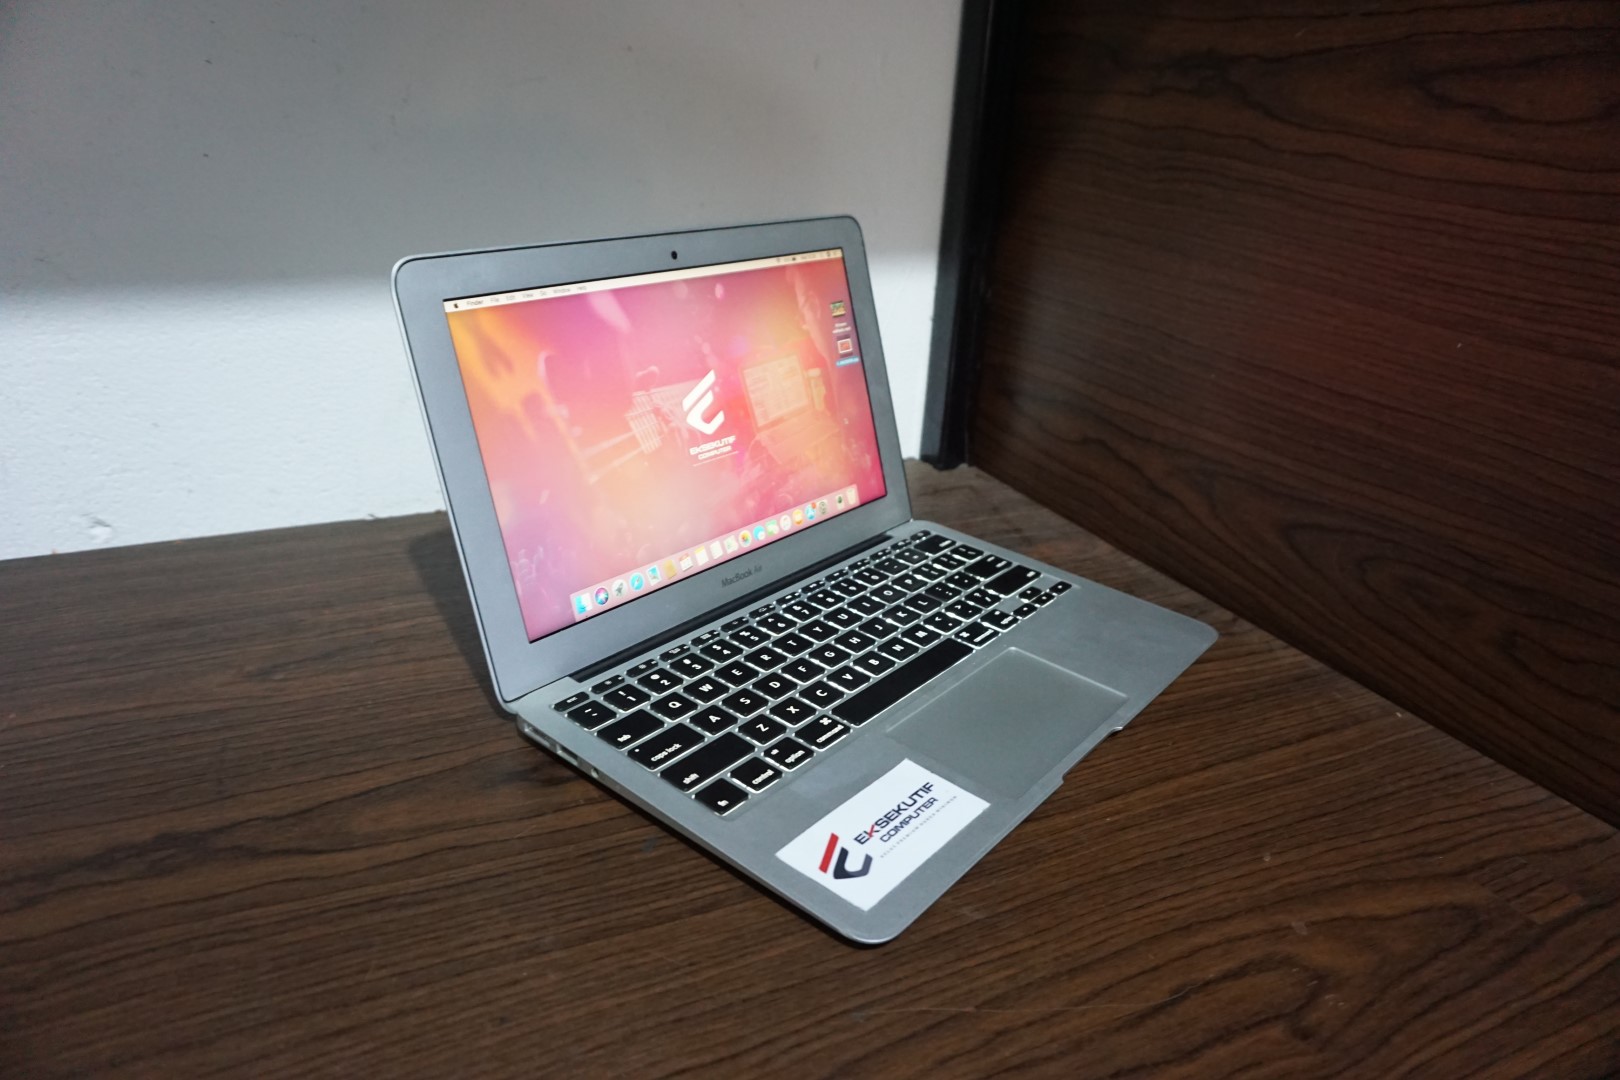 Jual Laptop MACBOOK AIR MD223 MID 2012